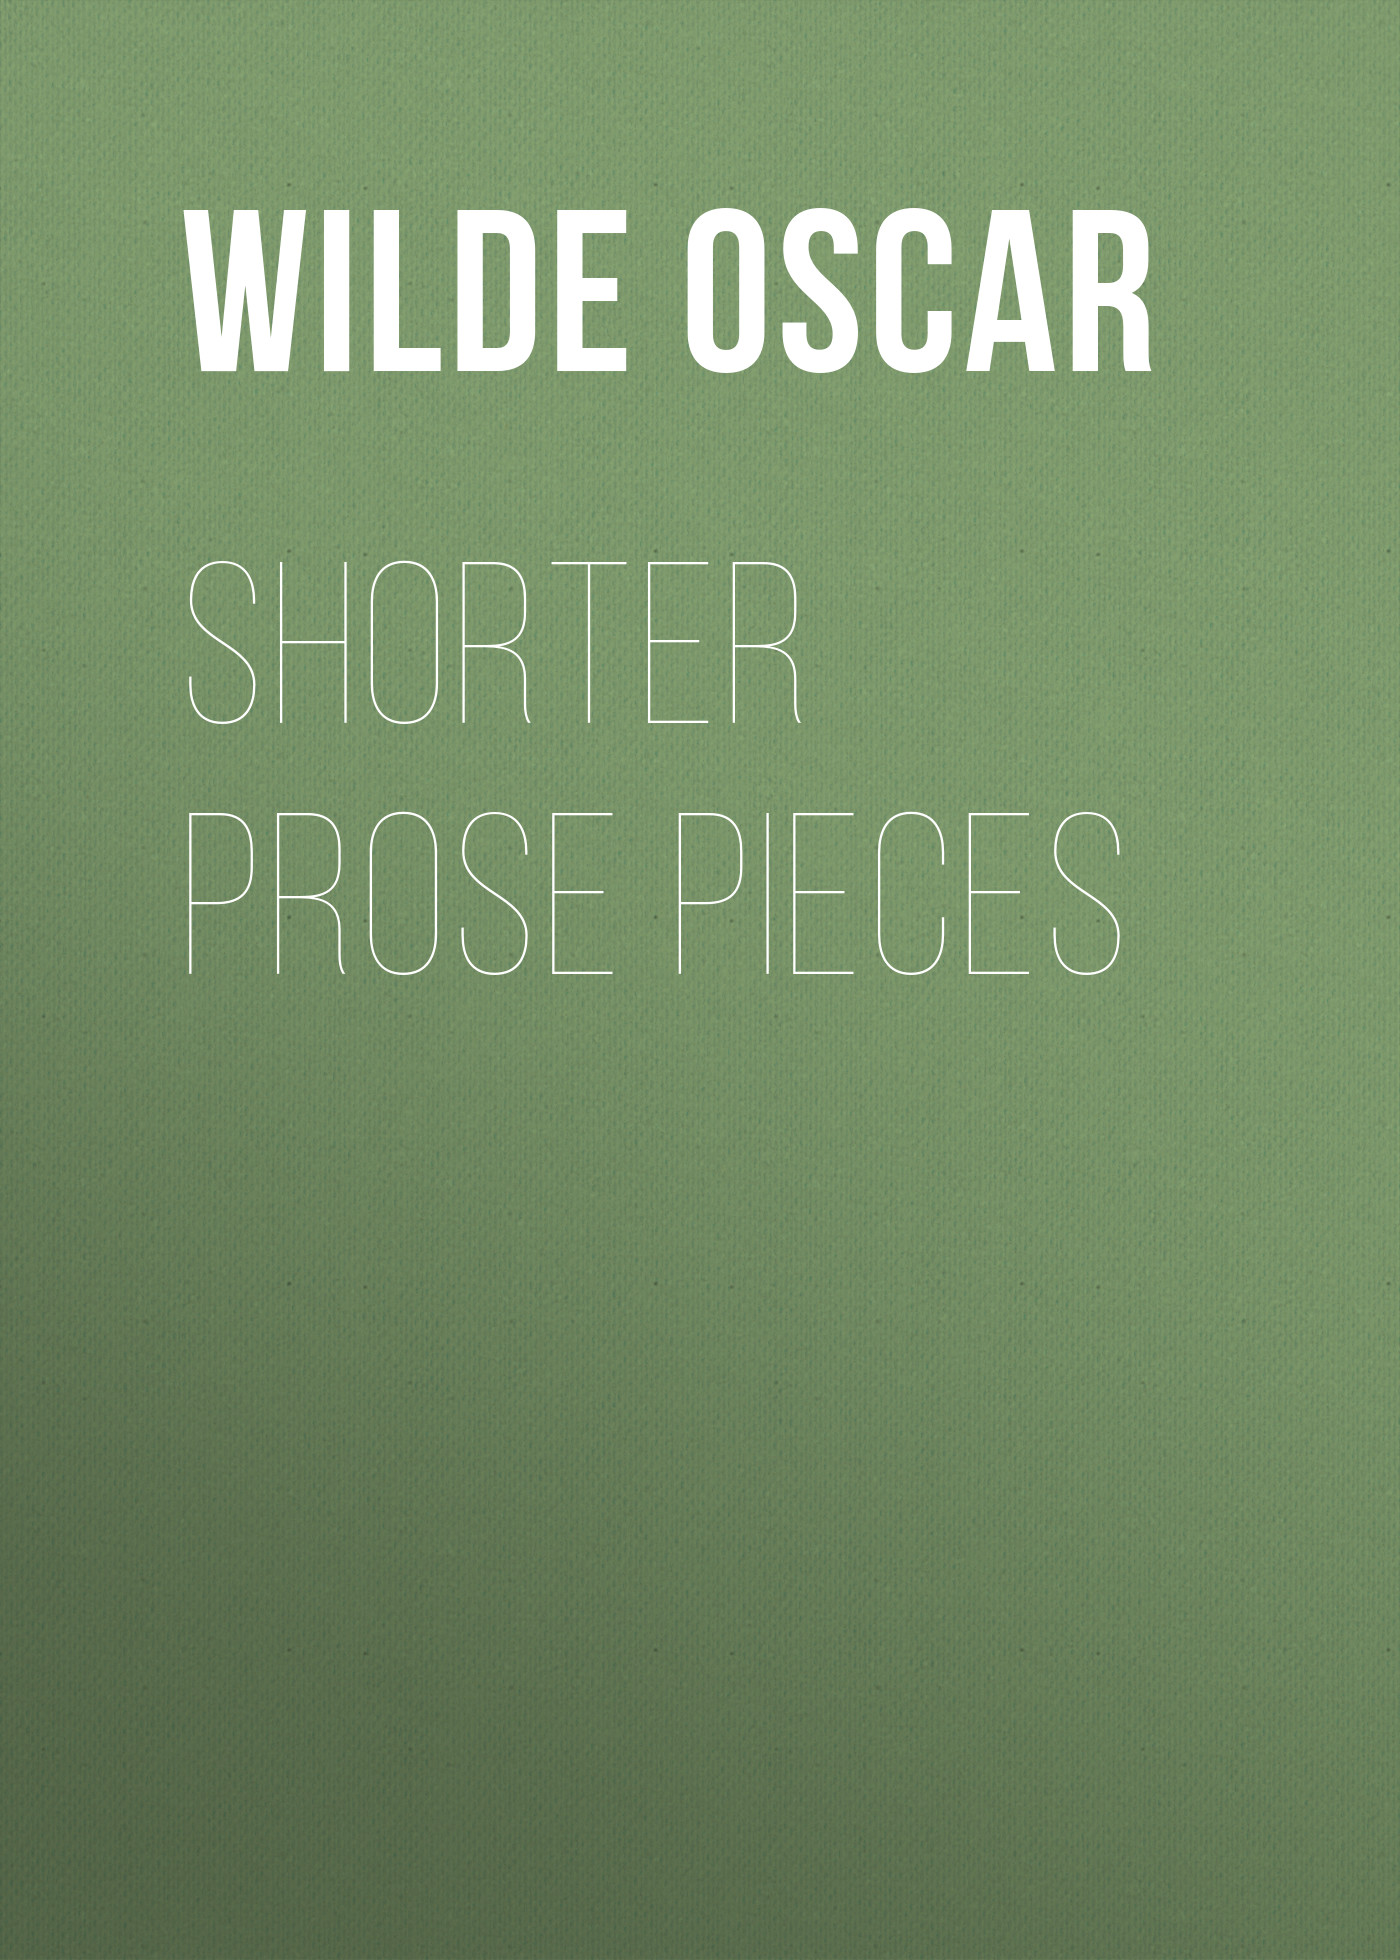 Книга Shorter Prose Pieces из серии , созданная Oscar Wilde, может относится к жанру Литература 19 века, Зарубежная классика, Эссе. Стоимость электронной книги Shorter Prose Pieces с идентификатором 25560100 составляет 0 руб.